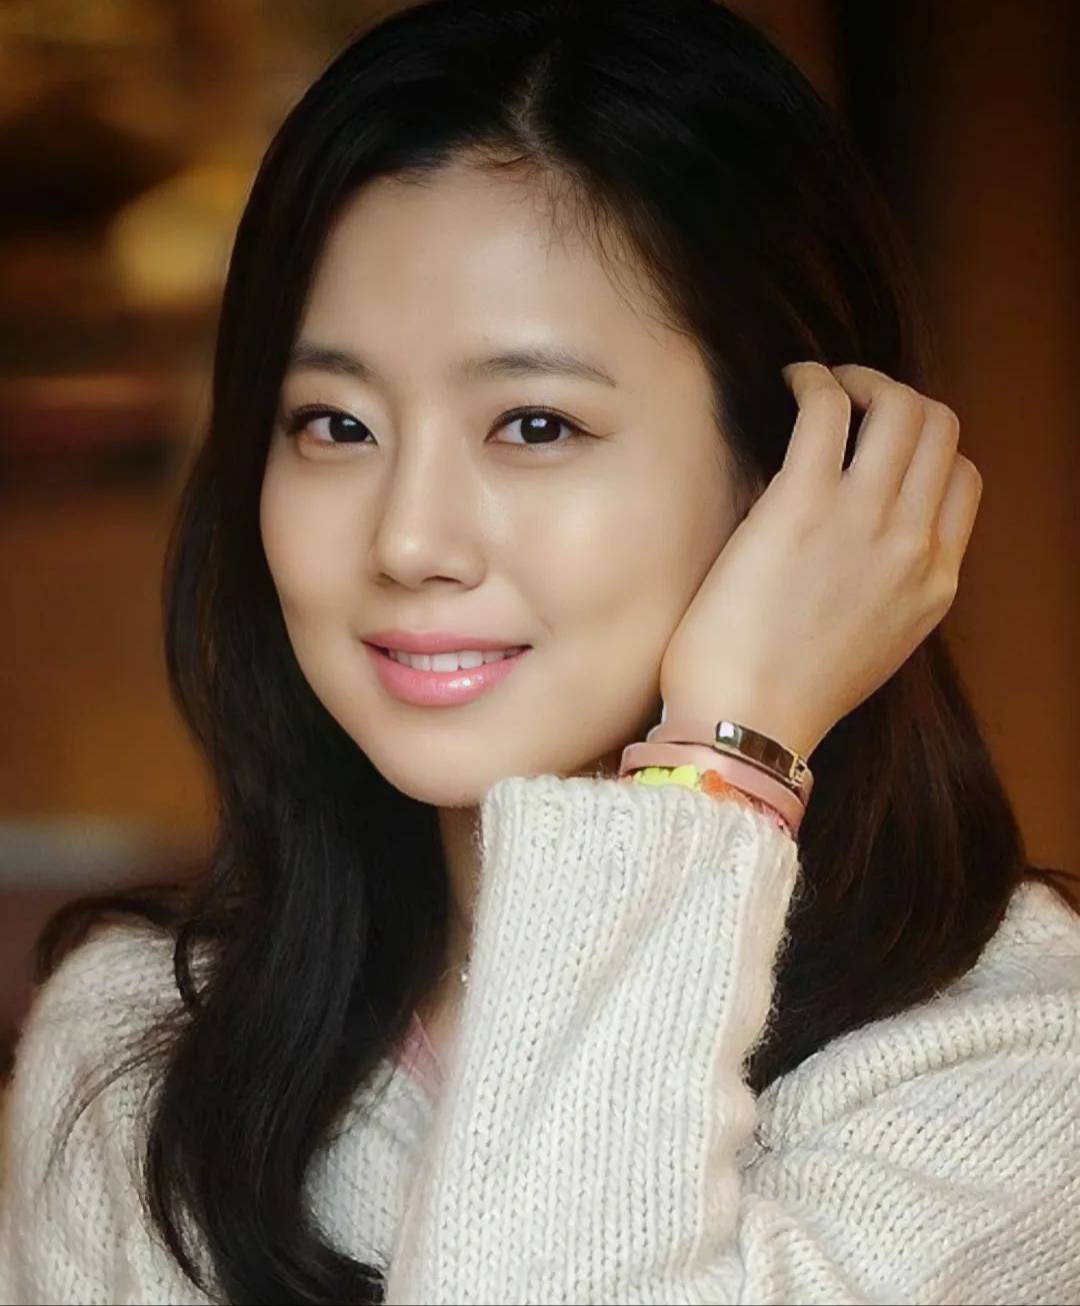 韓國女演員《風之畫員》文瑾瑩一同被稱為「五兩情侶」--文彩元 - 亞洲美女 -